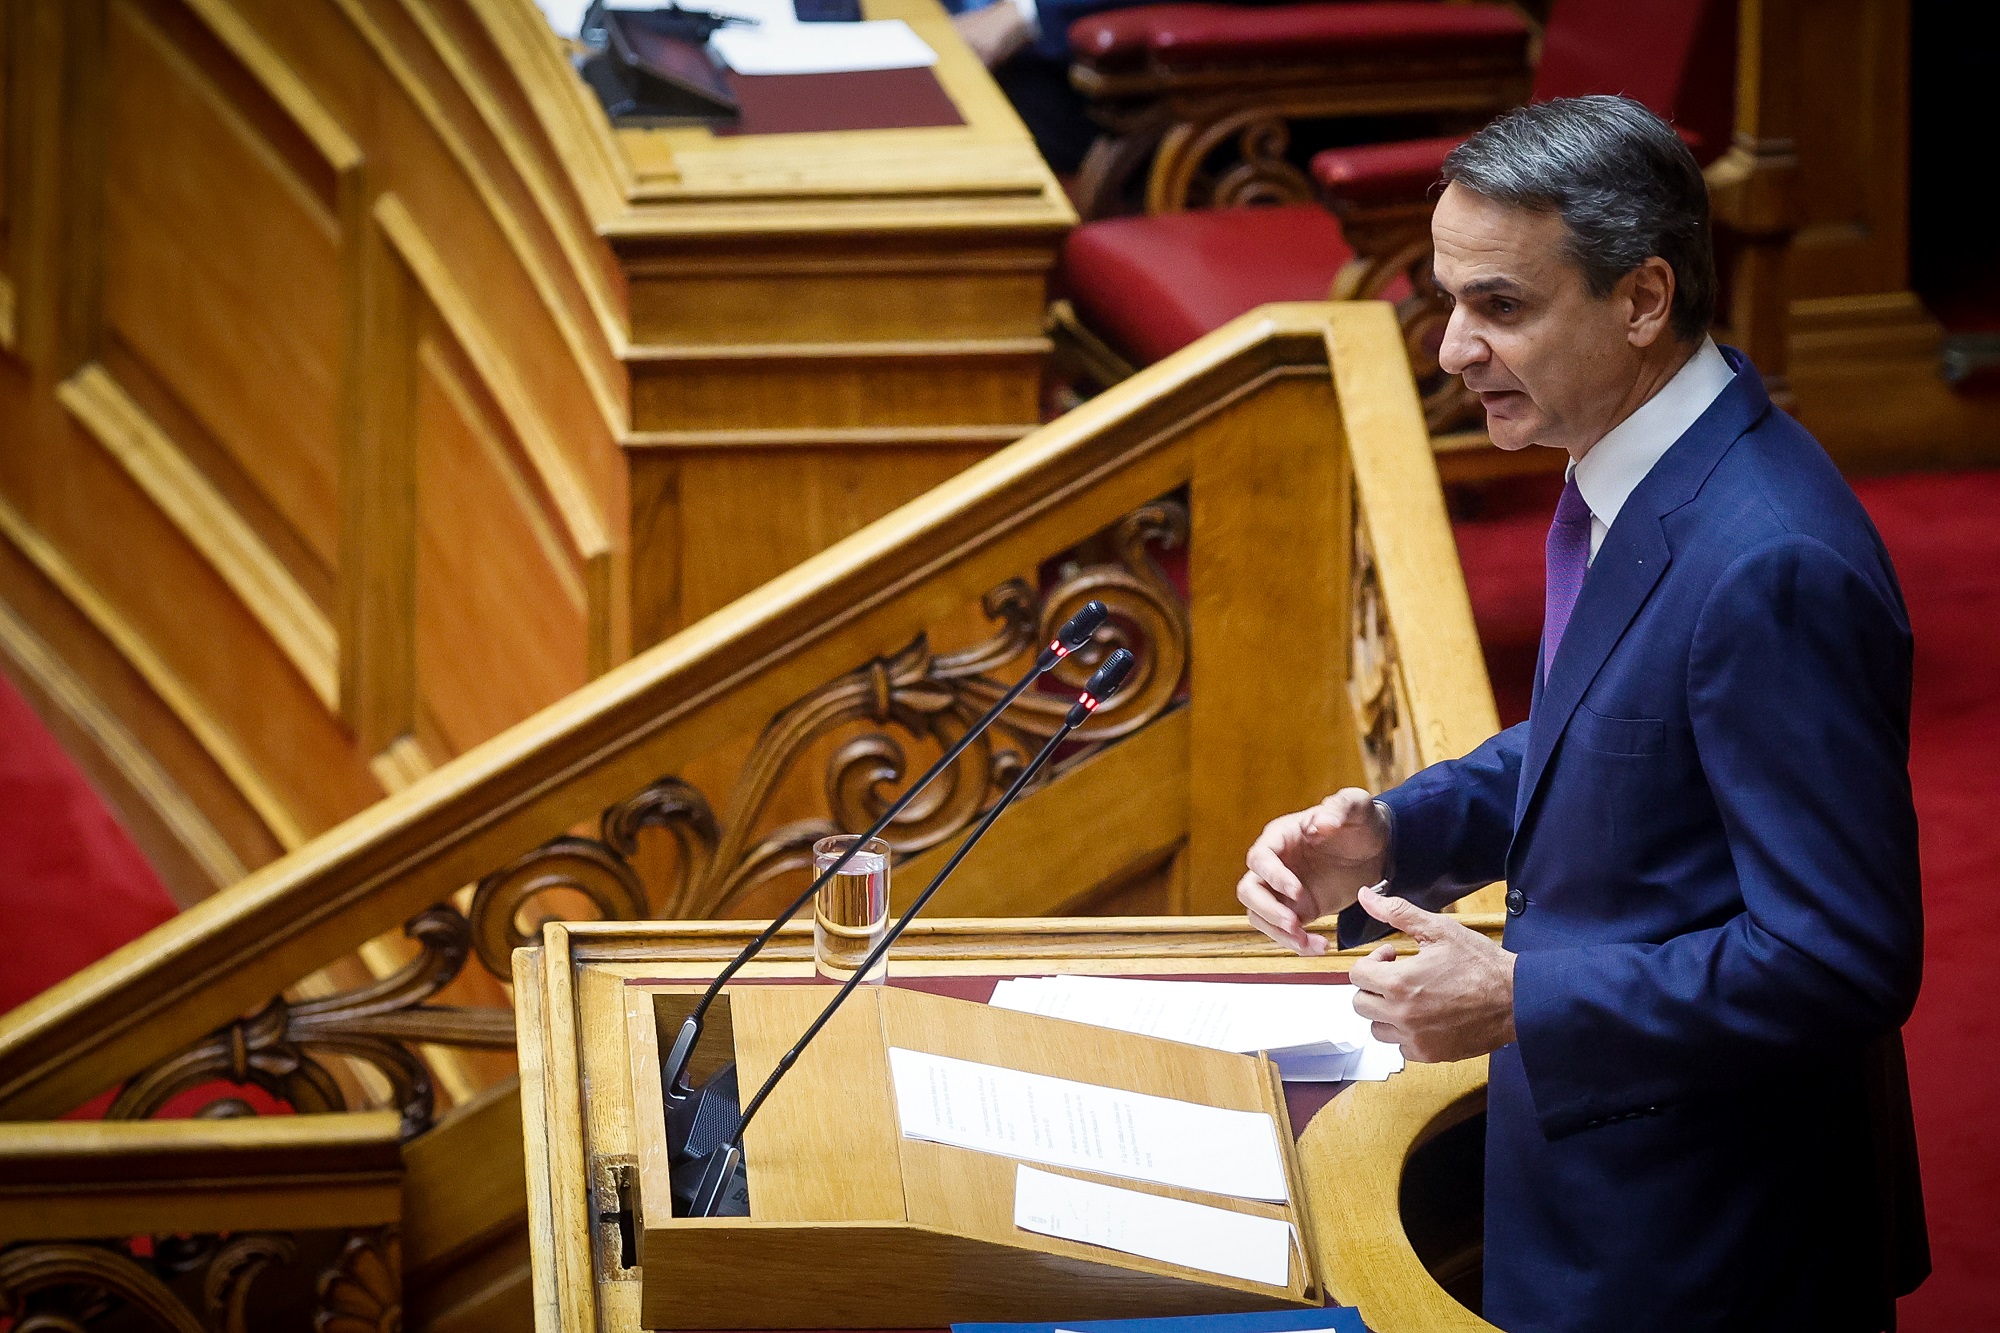 Ψήφος εμπιστοσύνης για την κυβέρνηση με 158 «Ναι» – Κ. Μητσοτάκης: Eντολή να προχωρήσουμε γρήγορα στις μεγάλες αλλαγές